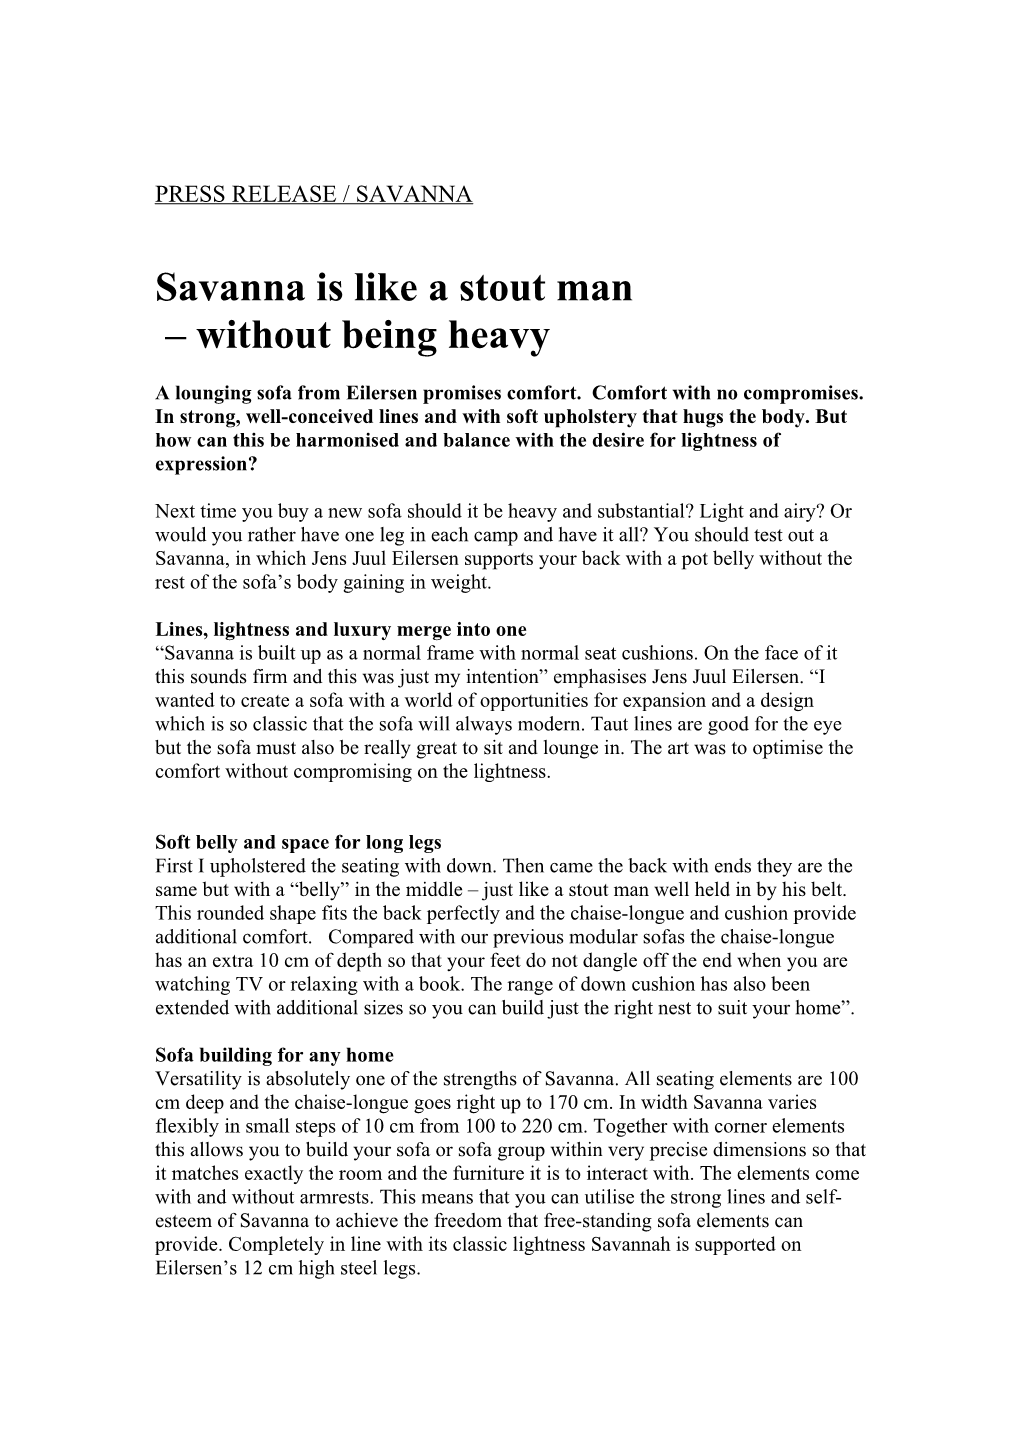 Savanna Is Like a Stout Man